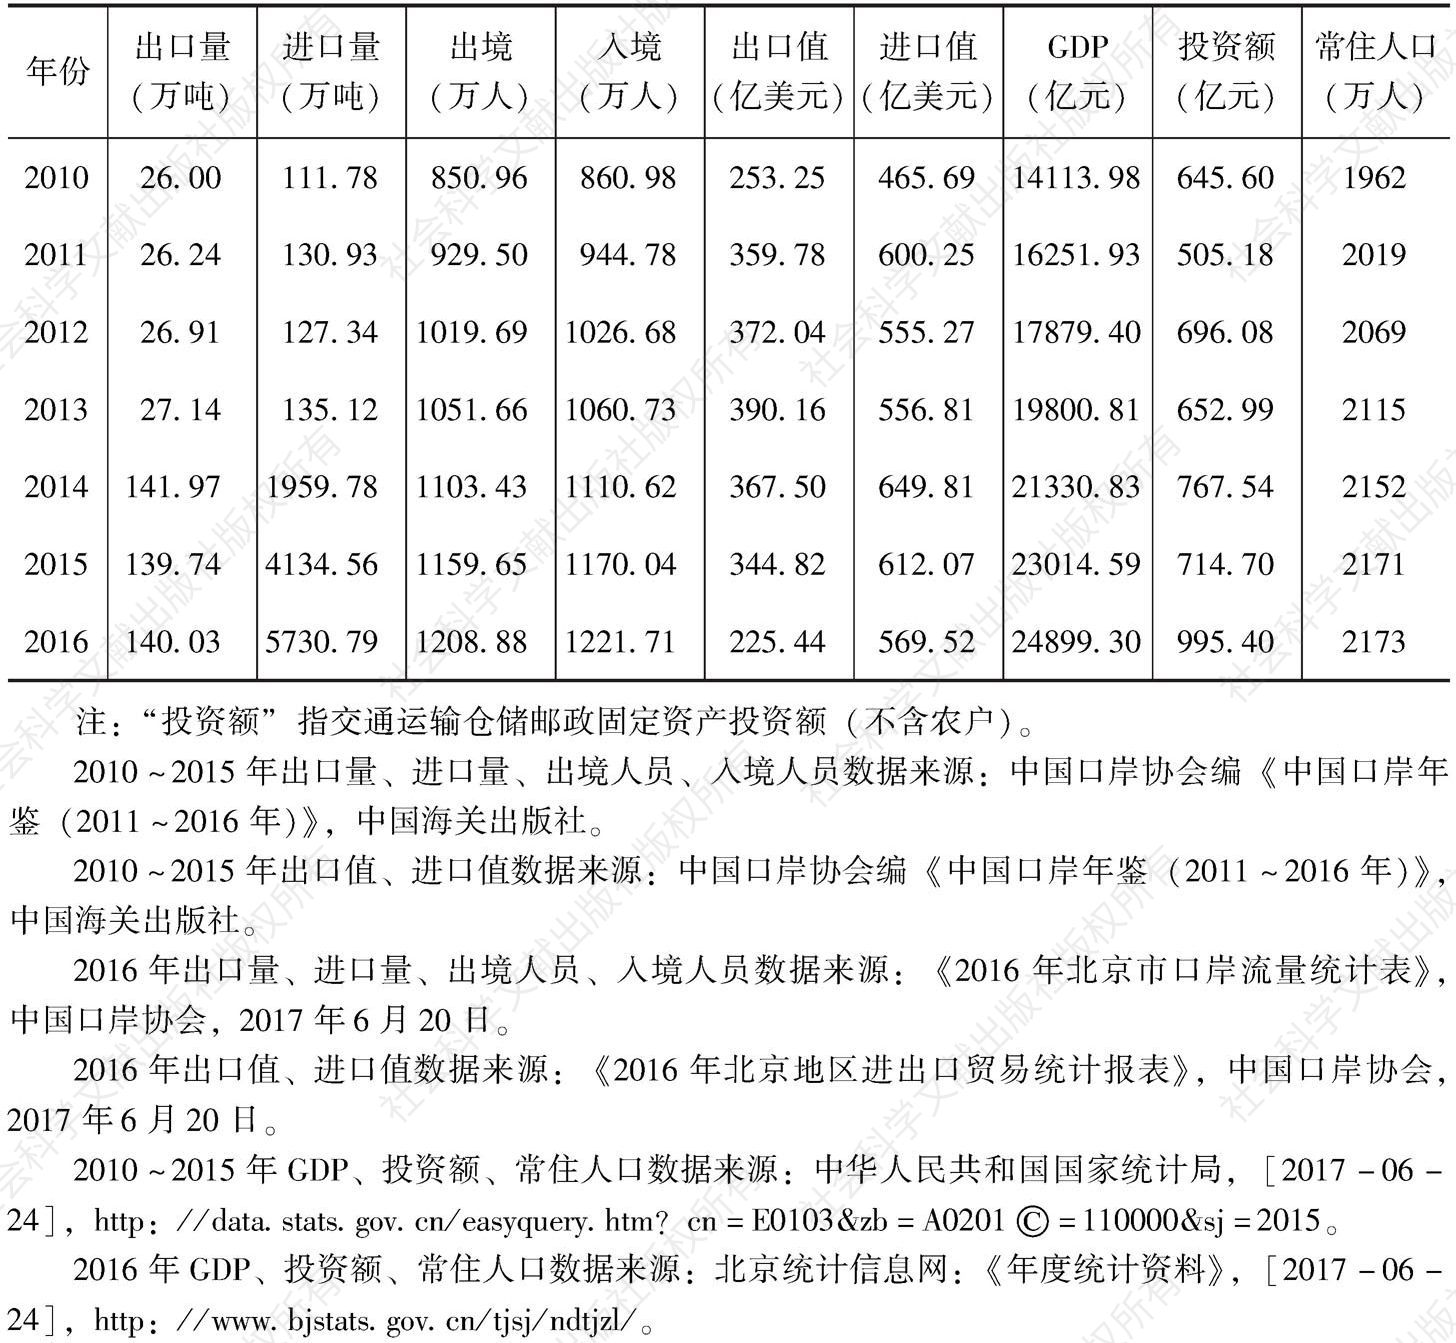 表4 北京口岸发展统计指标数据